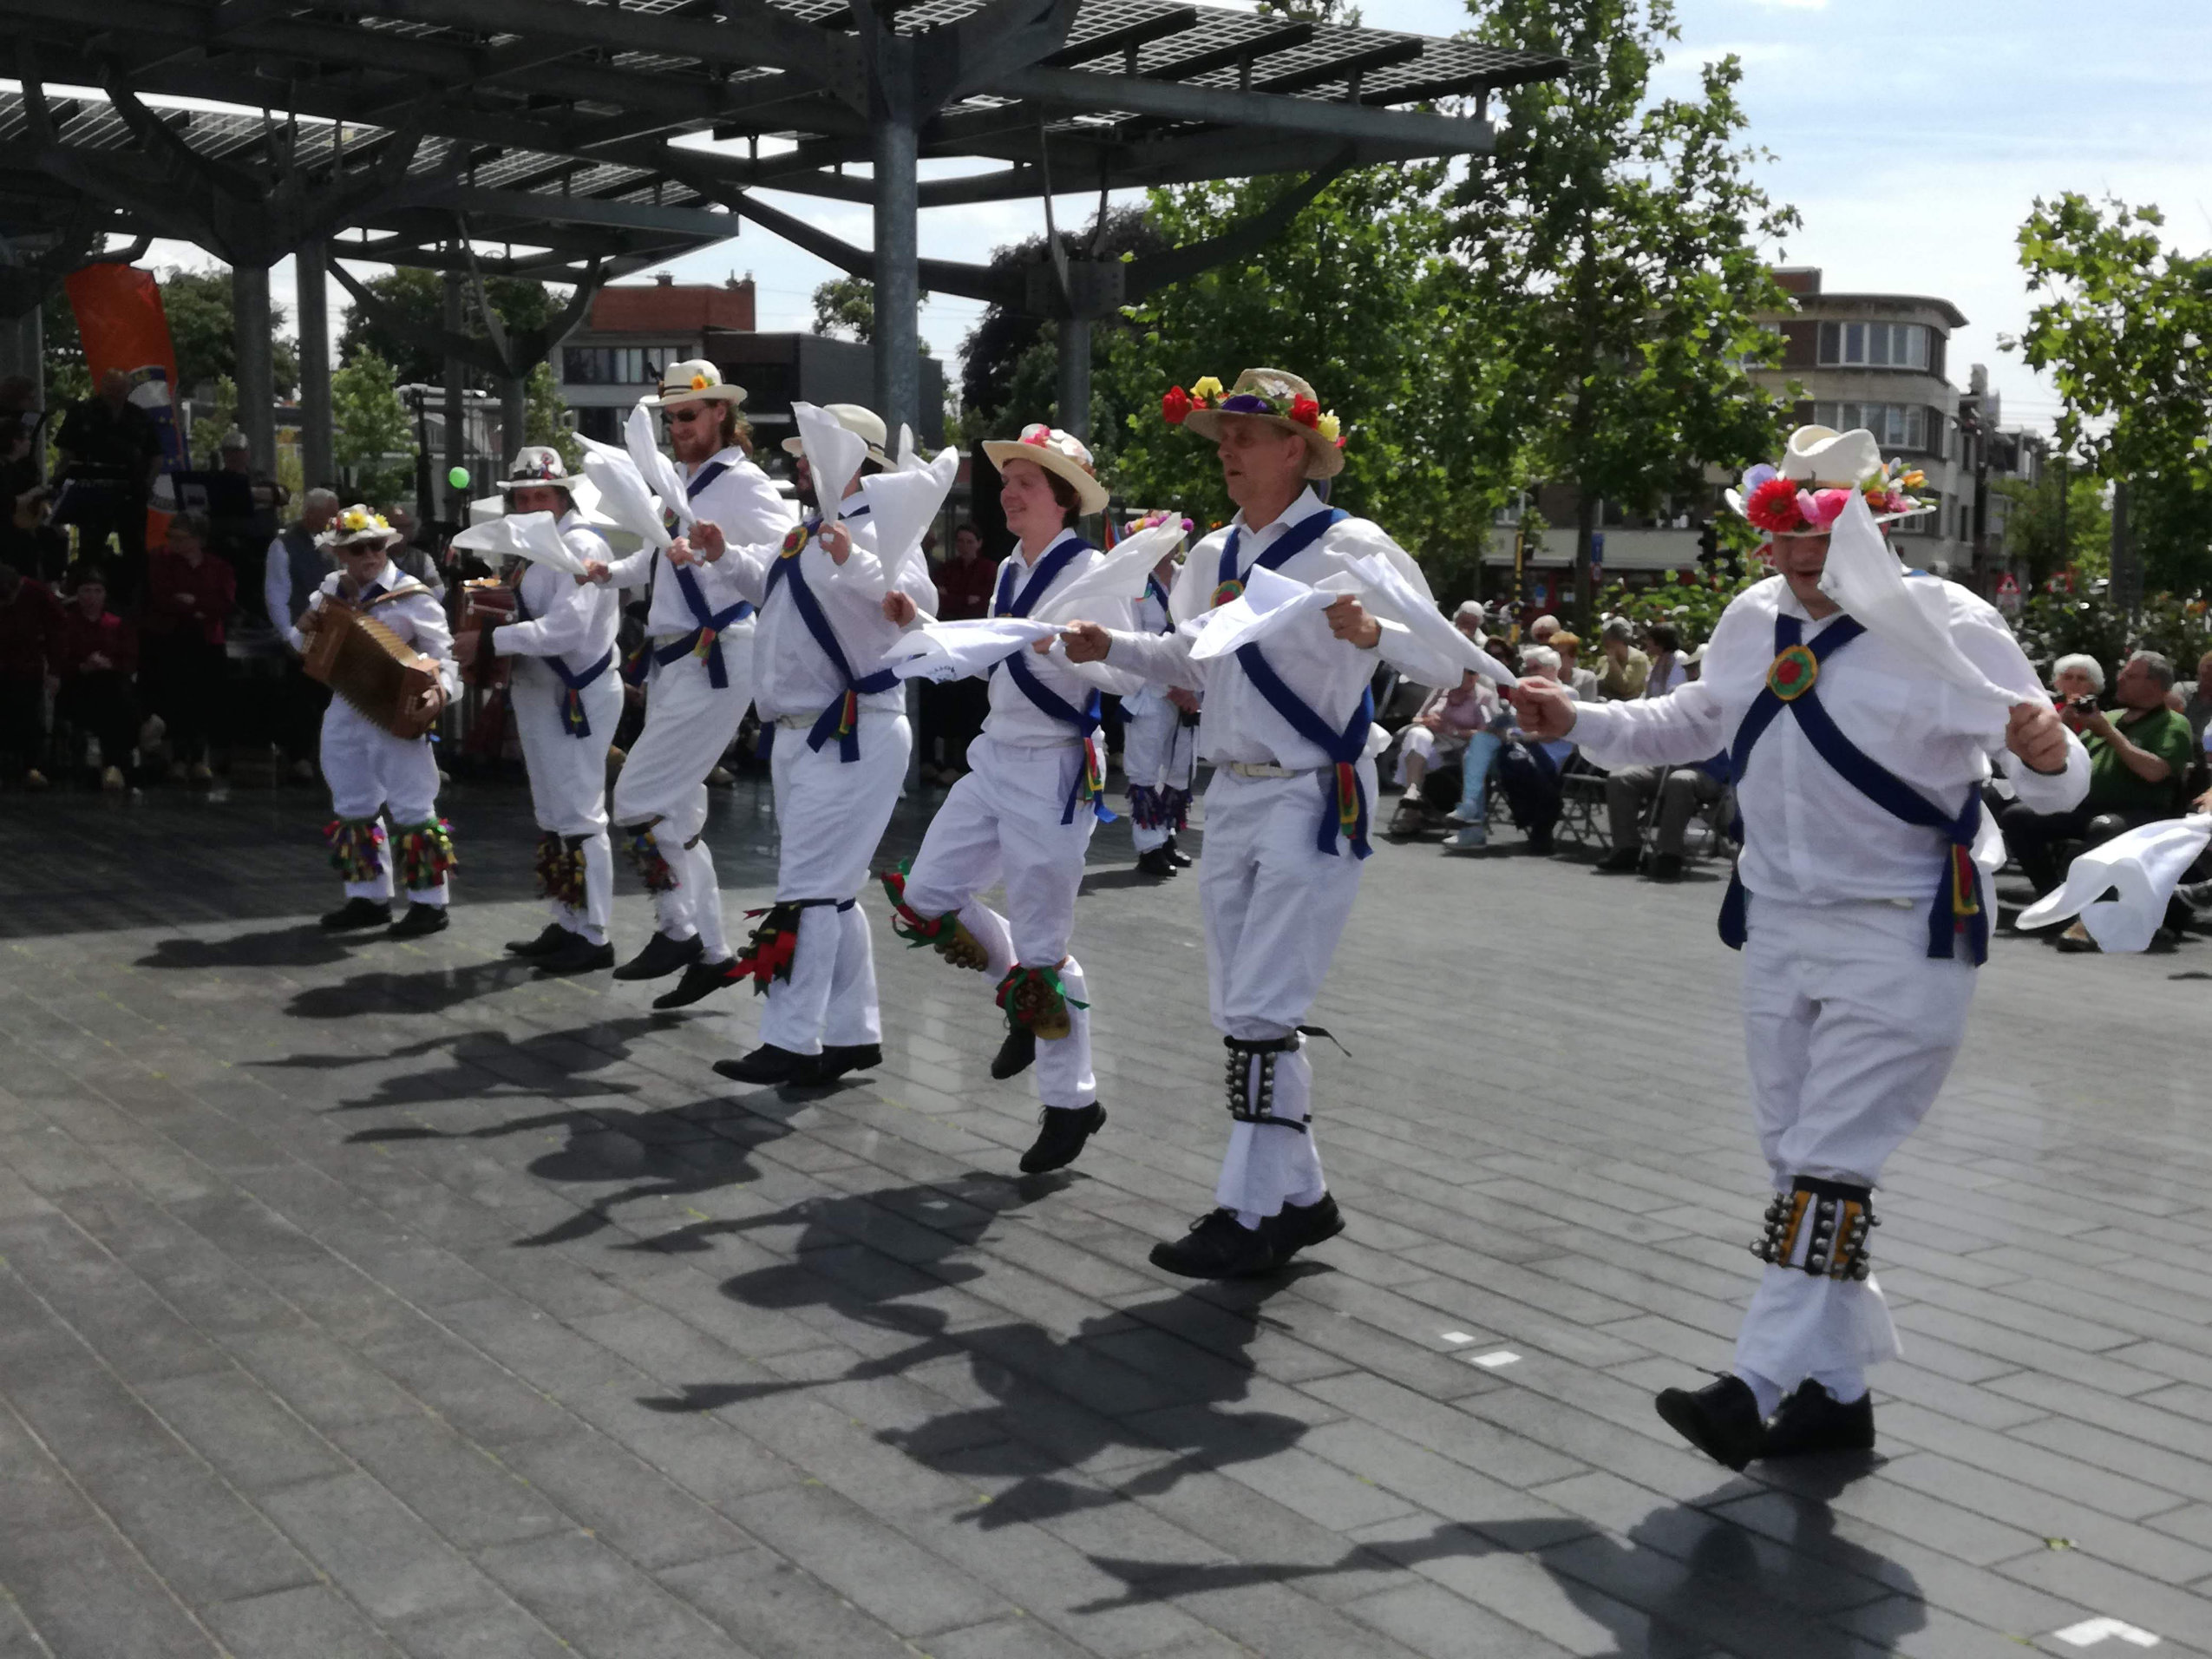 Dancing in Mortsel - Flanders